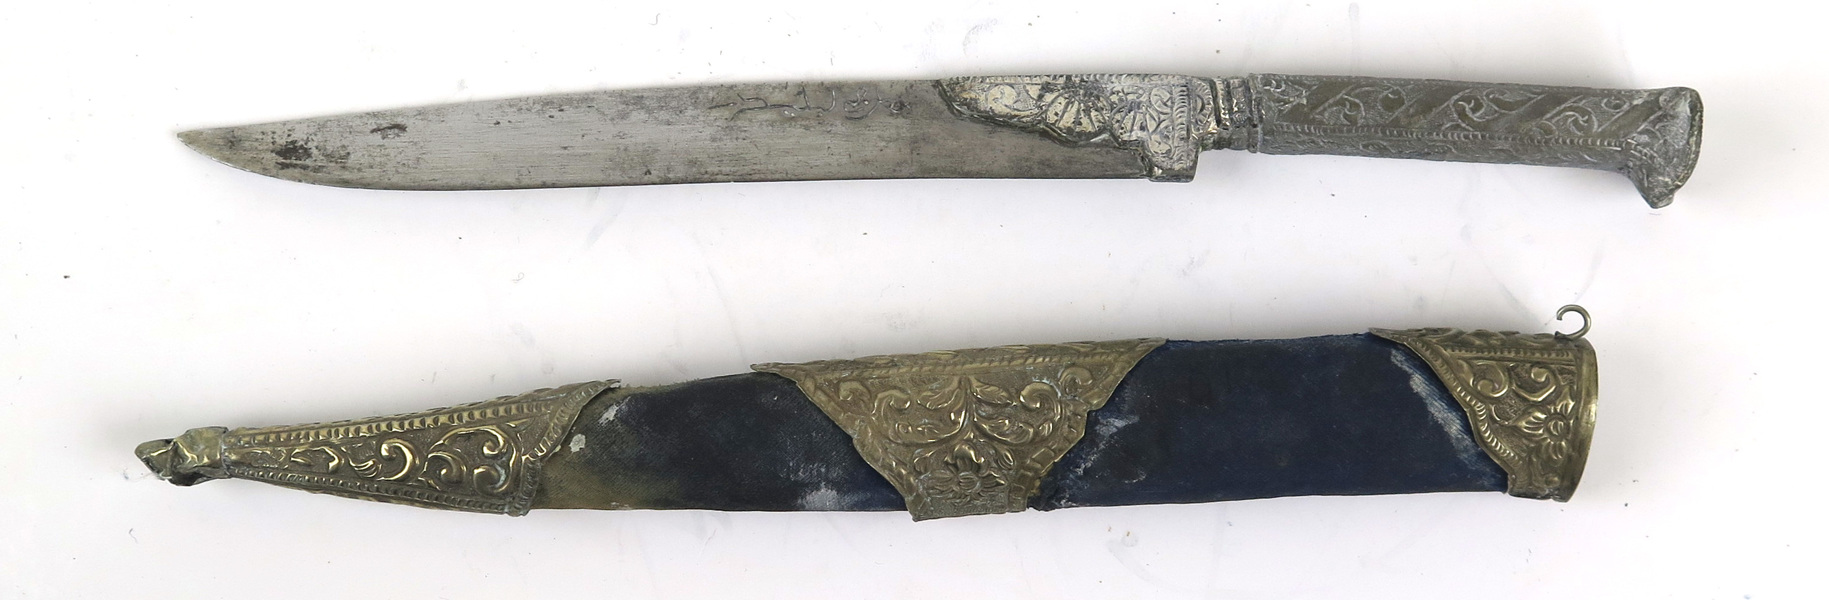 Yatagan i balja, underhaltigt silver eller försilvrad metall och siden, Osmans, 1900-talets början,_3880a_8d8751c71f75f84_lg.jpeg